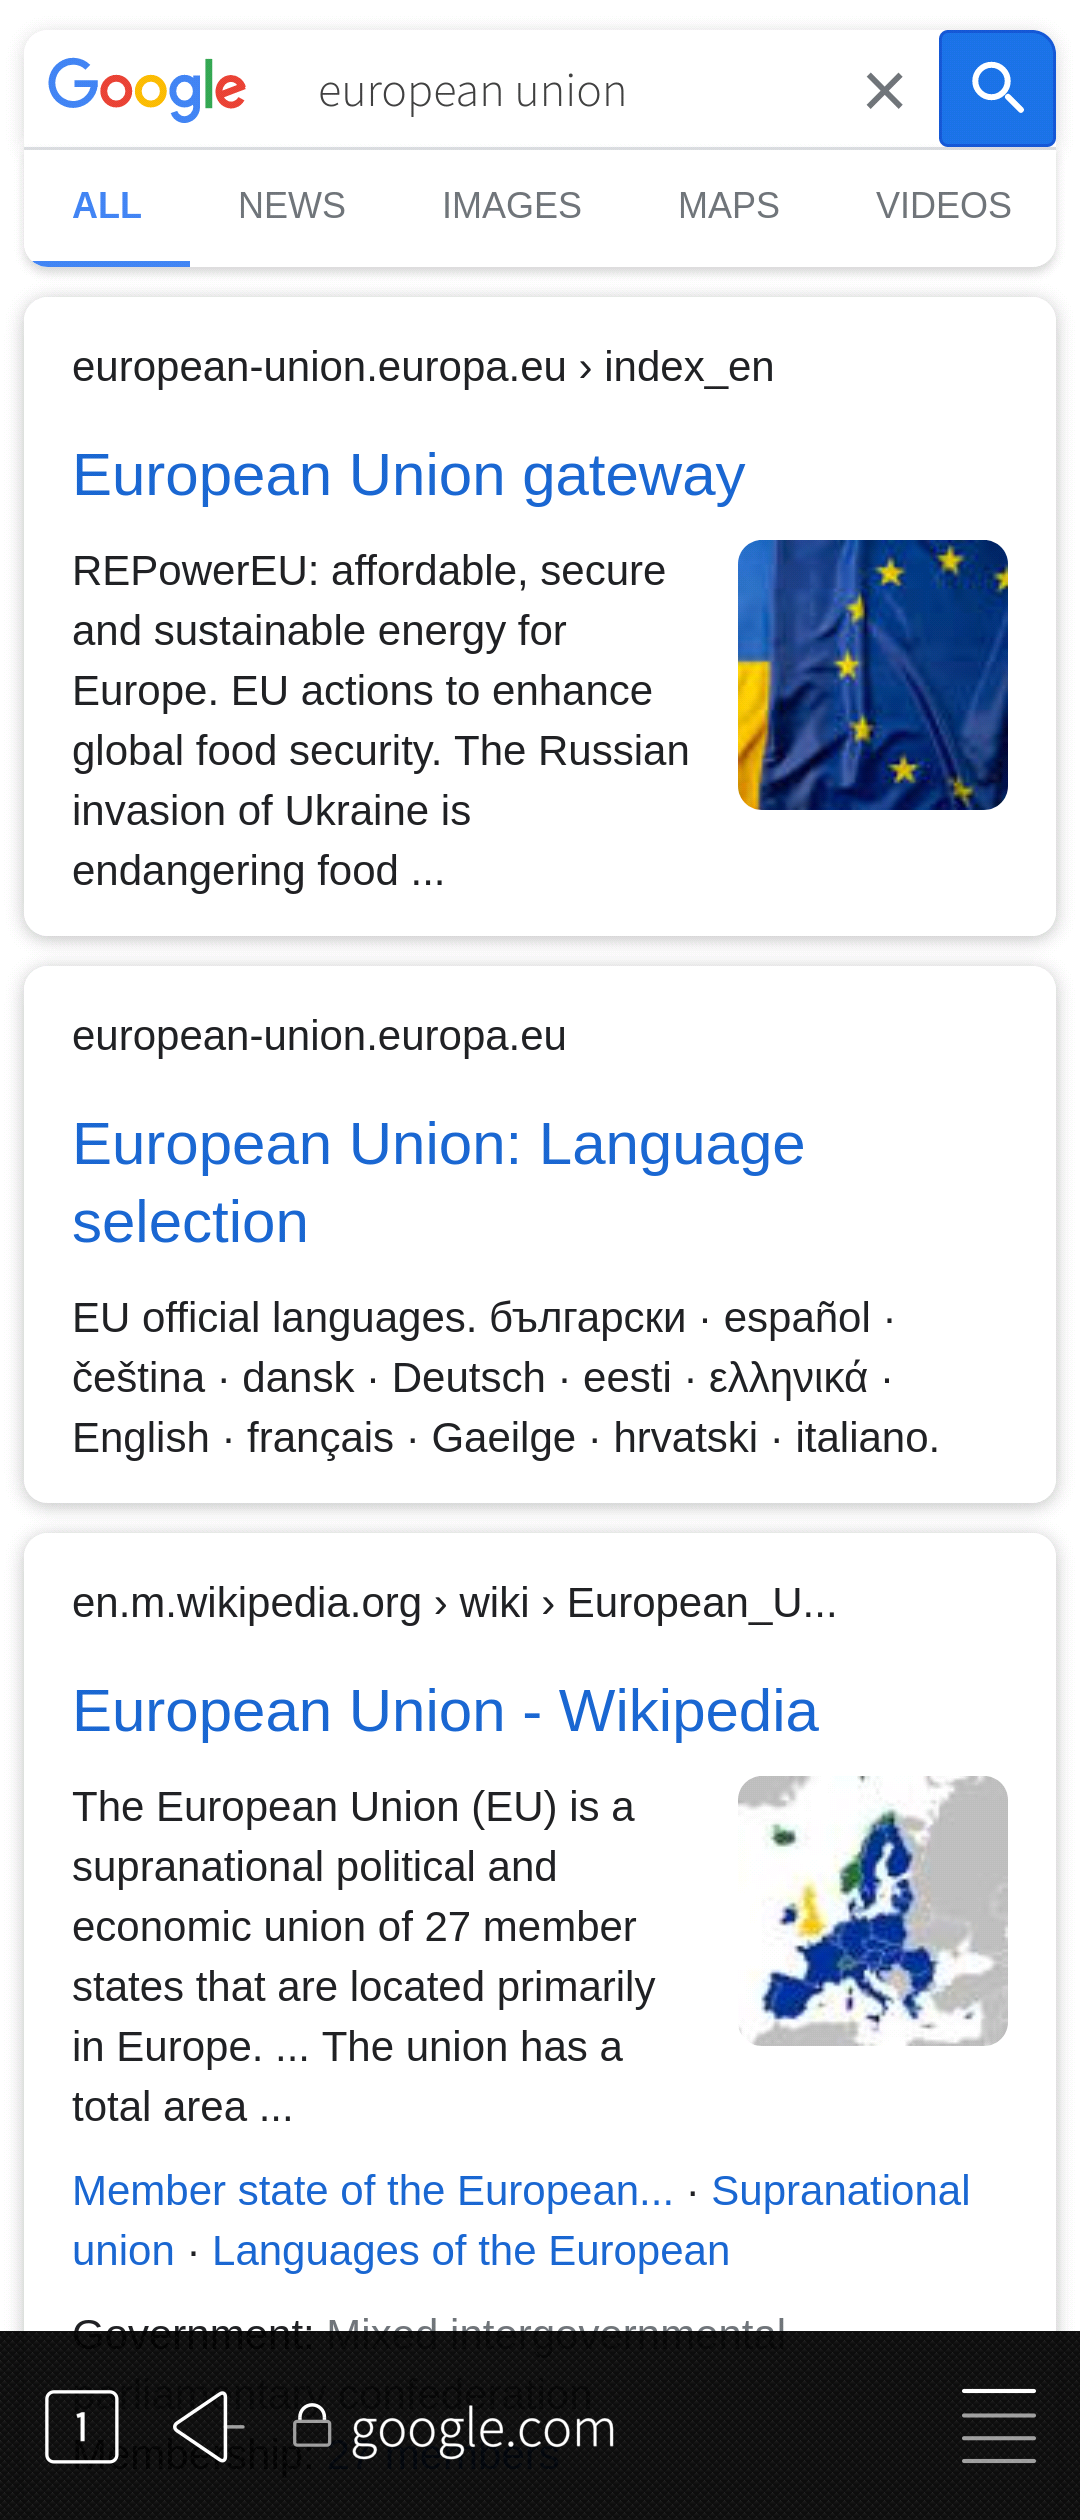 Google has found EU